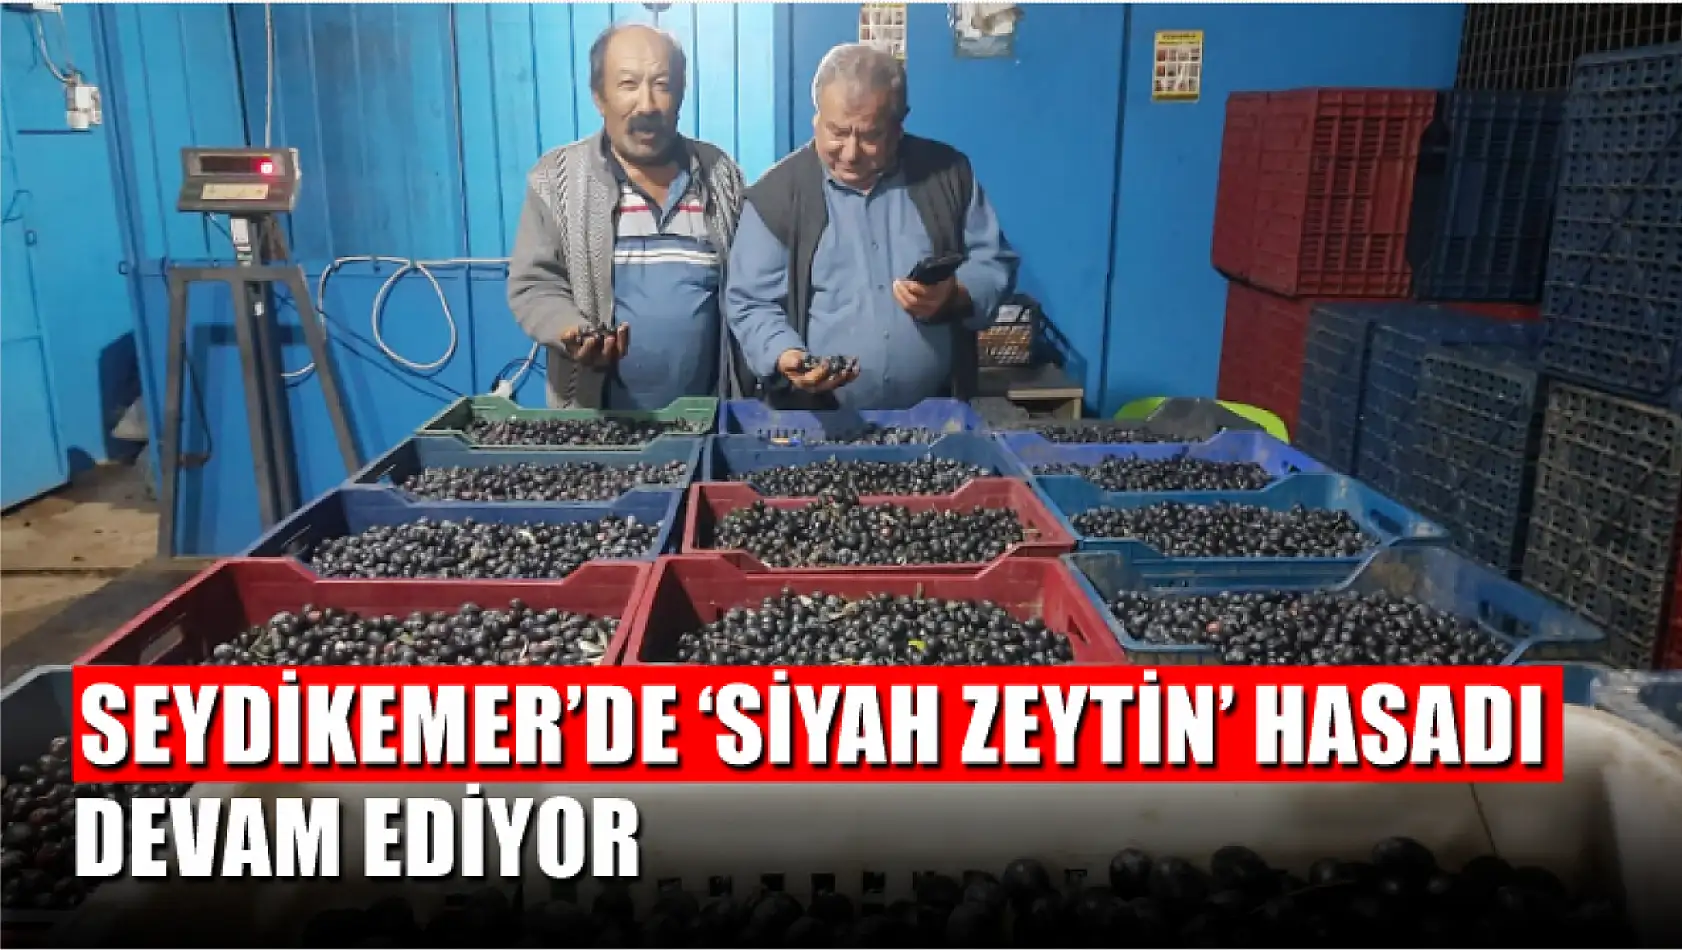 Seydikemer'de 'Siyah Zeytin' hasadı devam ediyor